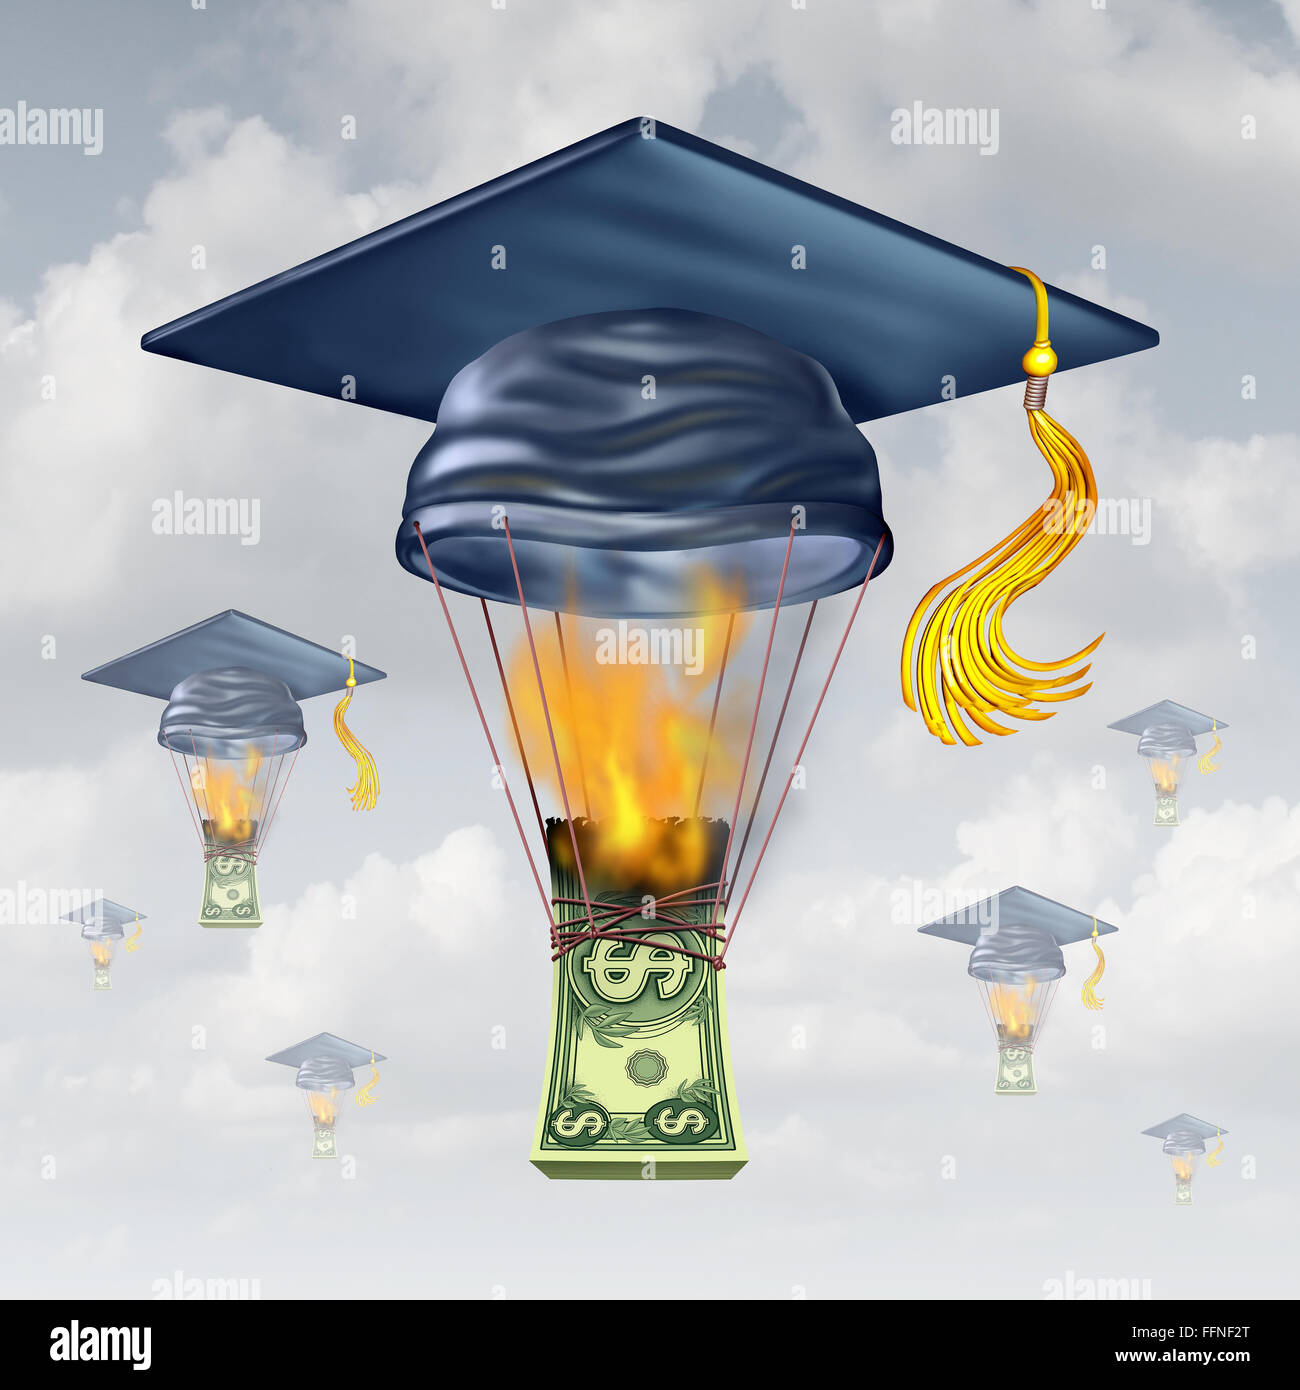 Kosten und High School Studiengebühren als Graduierung Hut geformt wie ein Heißluftballon wird von den Flammen das Verbrennen von Geld als Metapher für finanzielle Geld Stress hob. Stockfoto